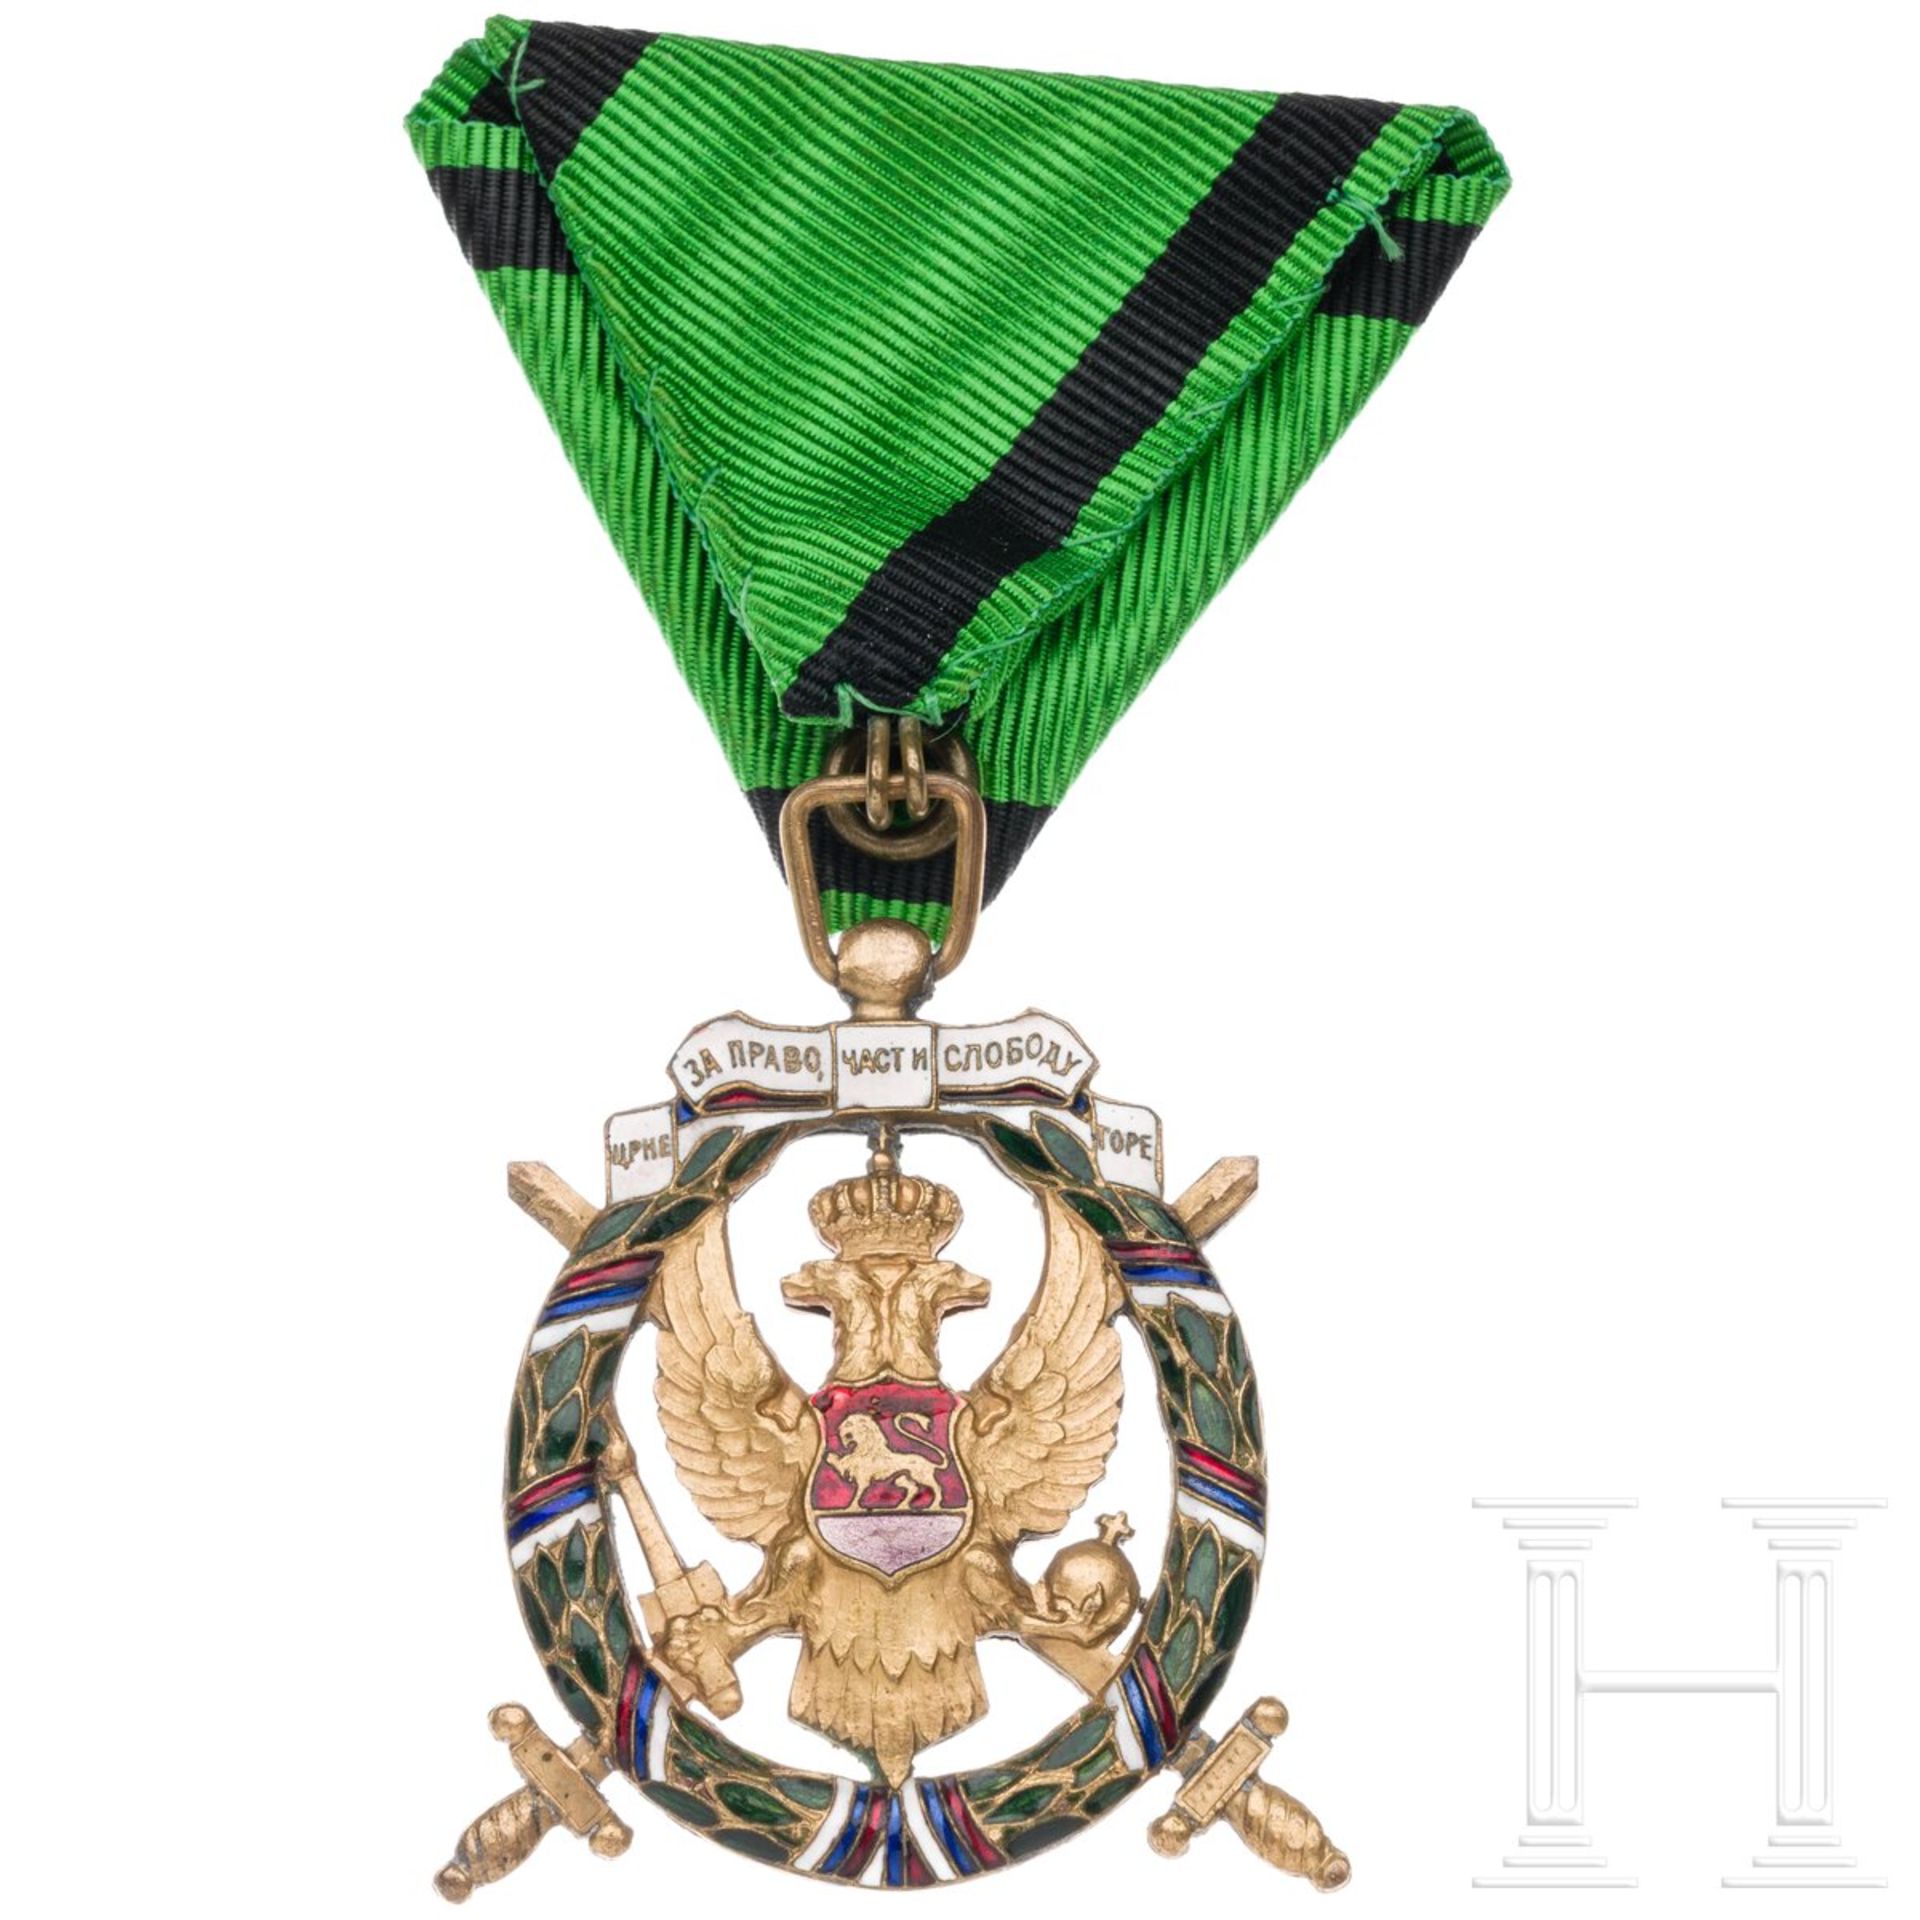 Medaille der grünen Truppen oder "Orden der Freiheit Montenegros", um 1920 - Image 2 of 4